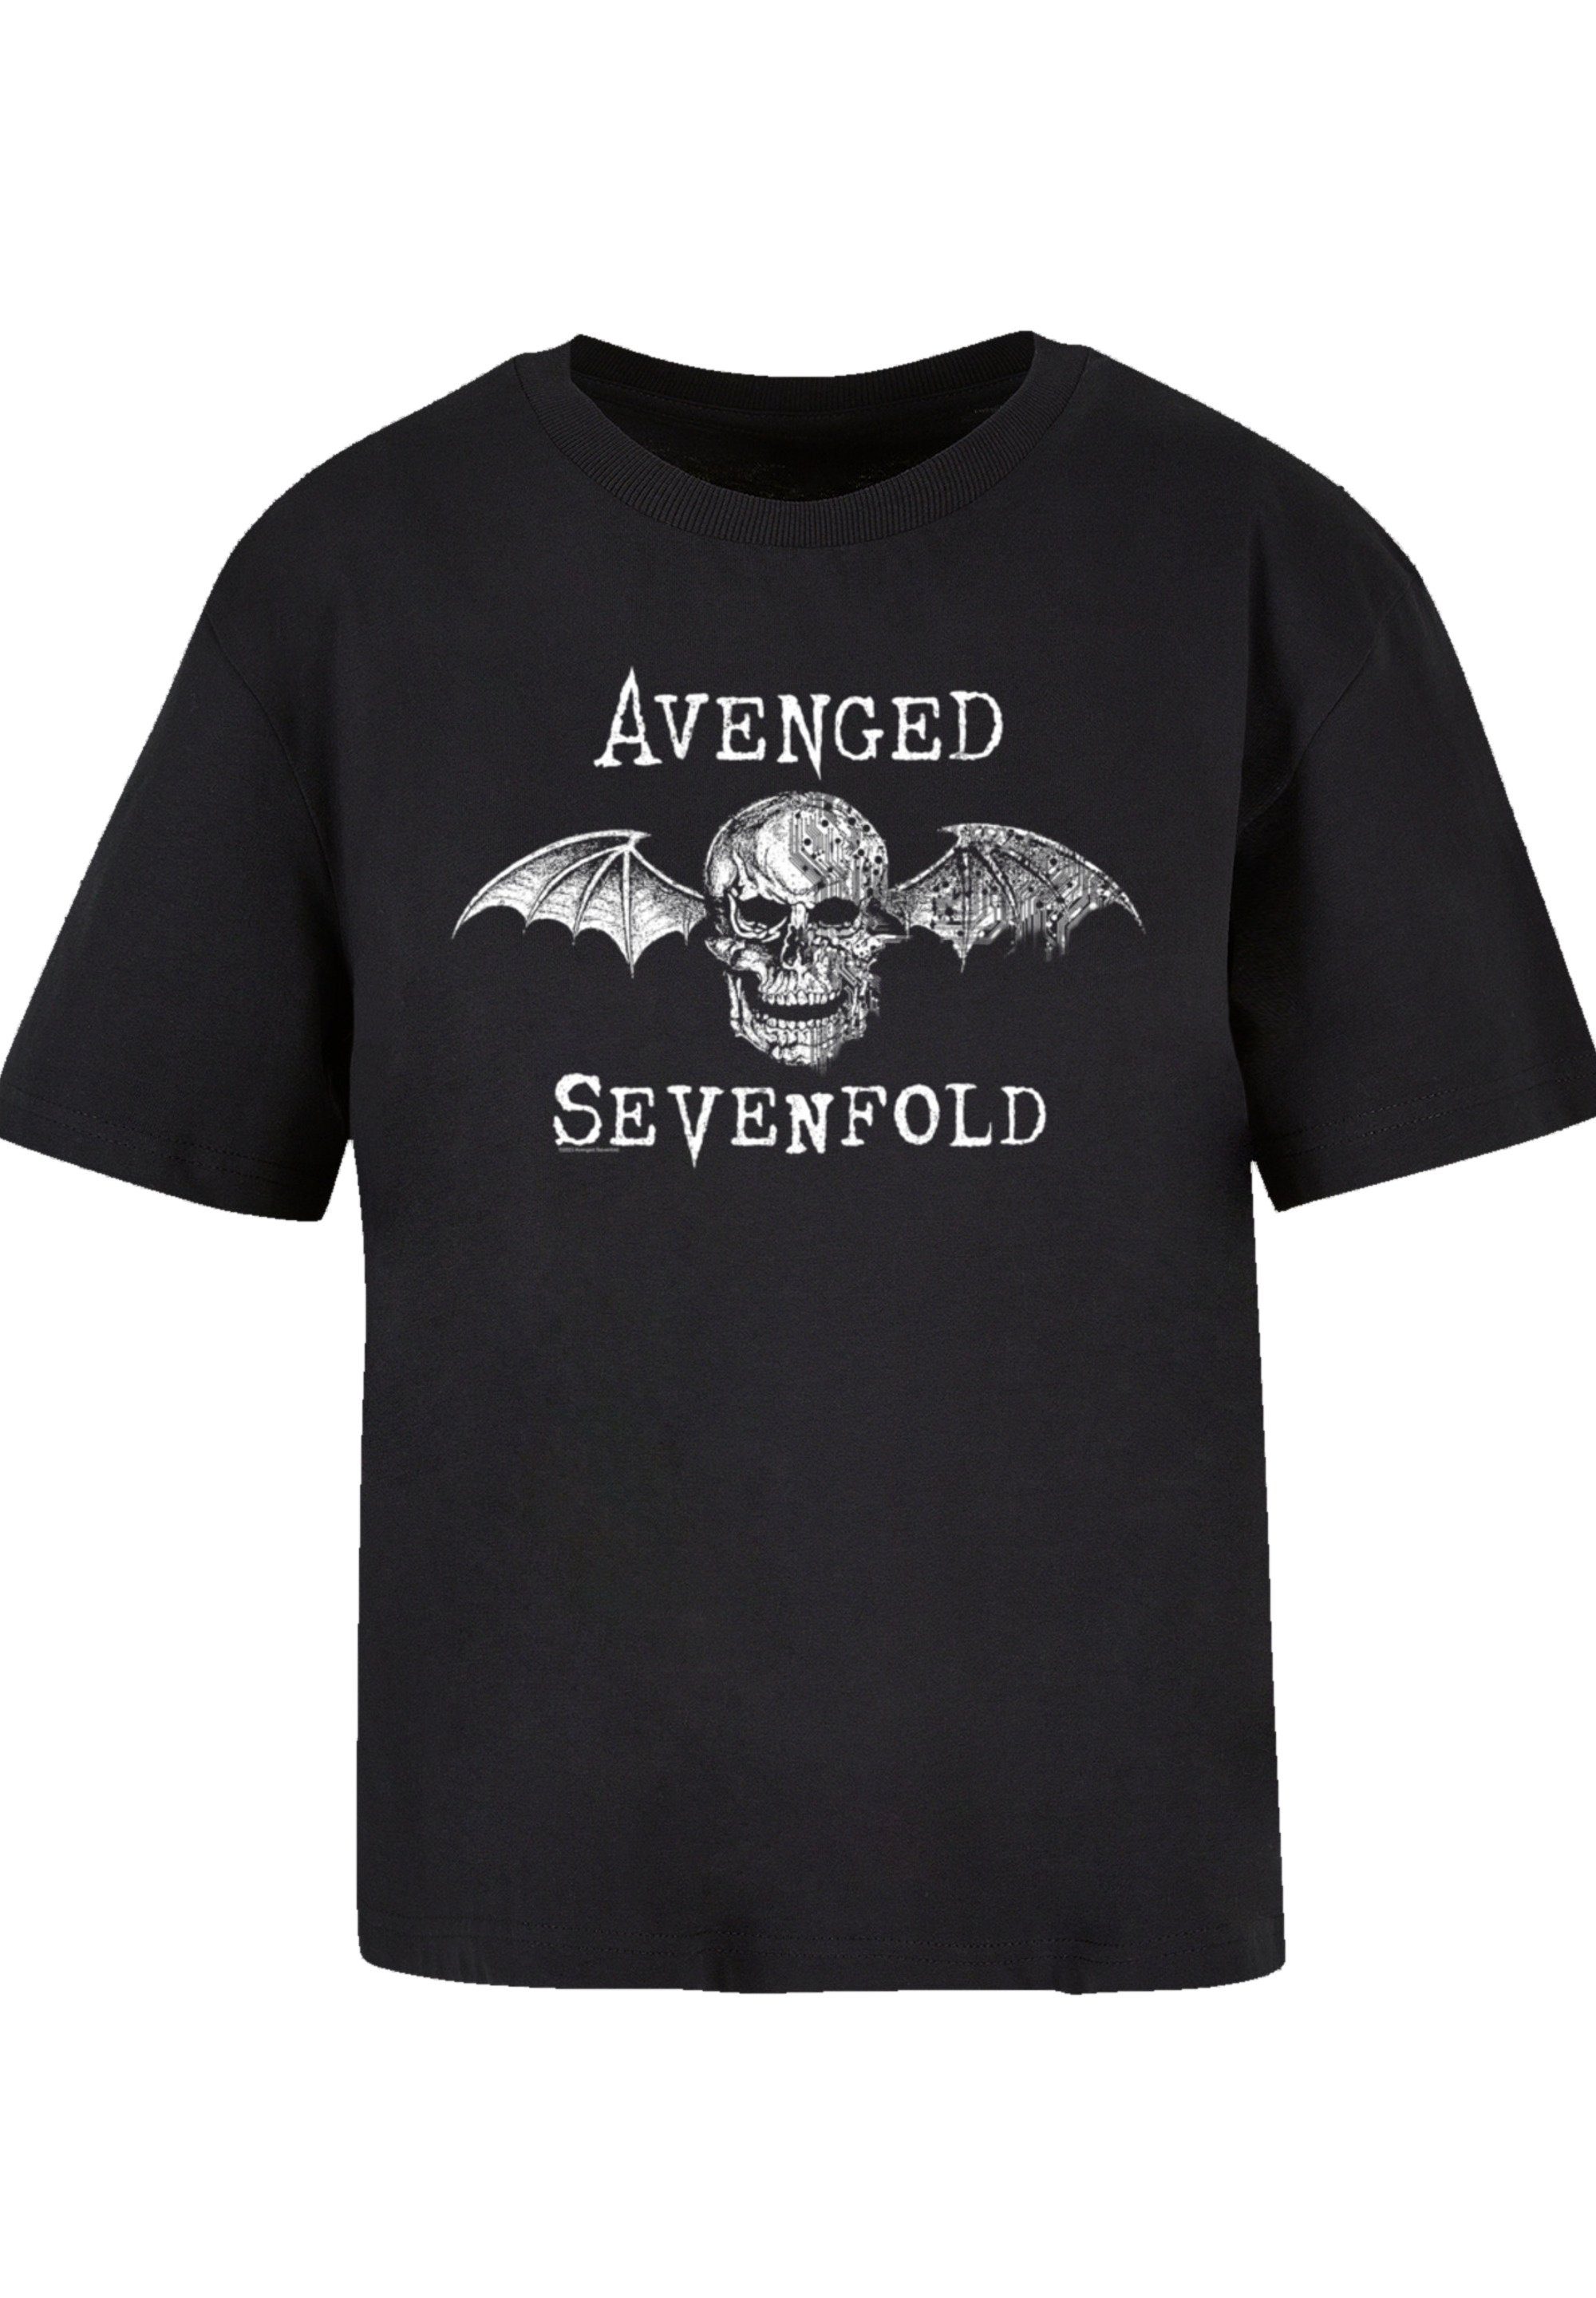 F4NT4STIC T-Shirt Avenged Sevenfold Rock Avenged Premium Bat Offiziell T-Shirt Qualität, Band, Metal Cyborg Sevenfold Rock-Musik, Band lizenziertes